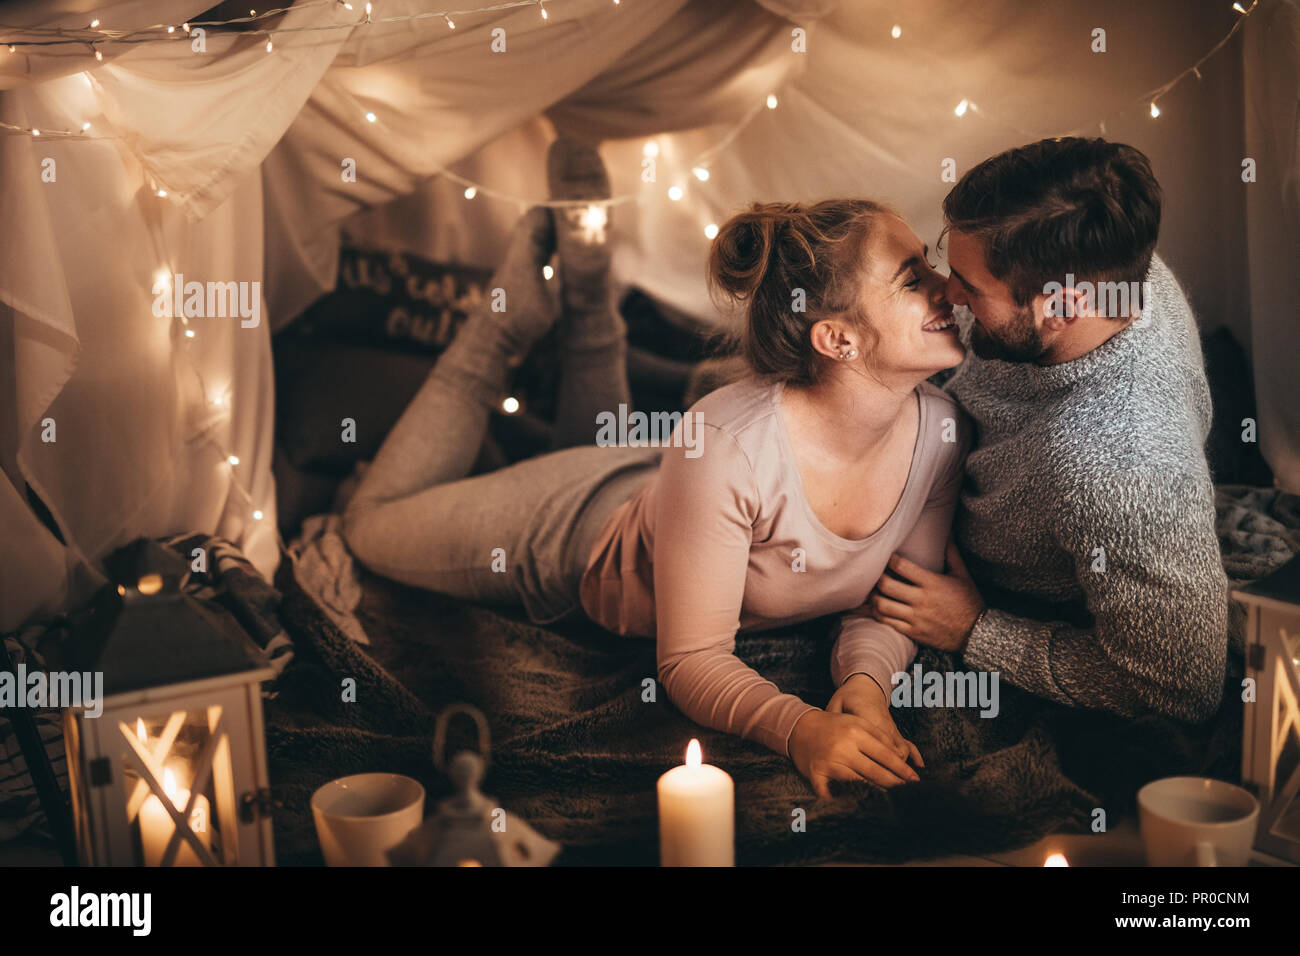 Paar zusammen auf dem Bett in einem Zimmer mit Kerzenlicht und winzige serielle Lampen eingerichtet. Lächelnde Frau verbringt gerne Zeit mit ihrem Mann in Schlafzimmer Stockfoto